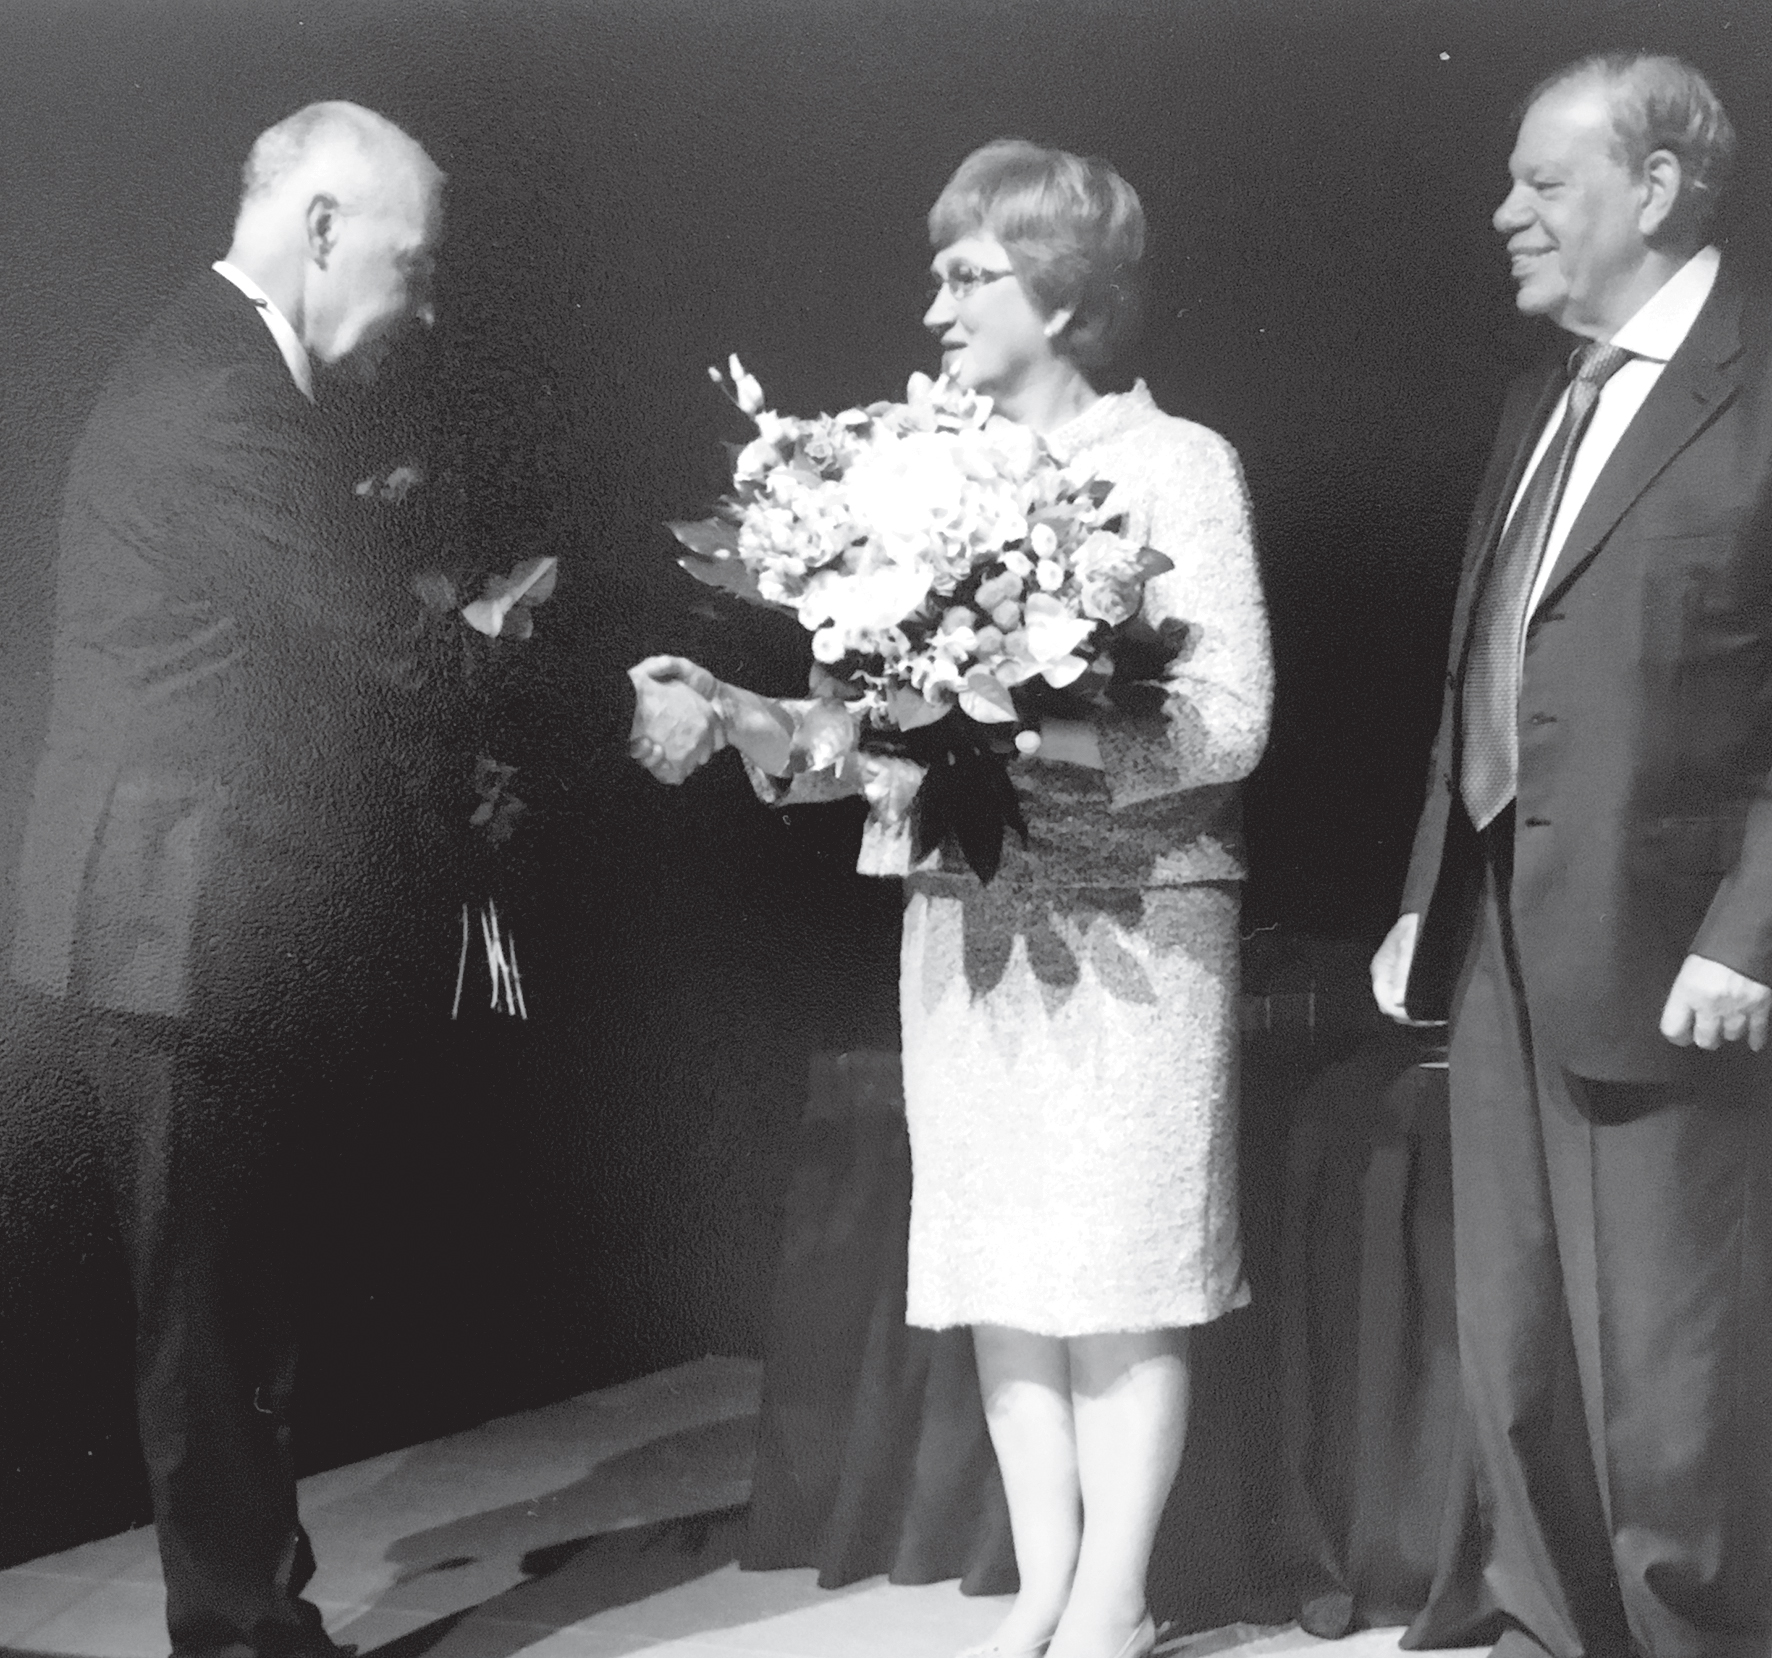 Grindeļa medaļas  pasniegšanas ceremonijā  apsveikums tiek saņemts  no prof. Jāņa Vētras,  pa labi – Kirovs Lipmans,  Grindeks padomes  priekšsēdētājs